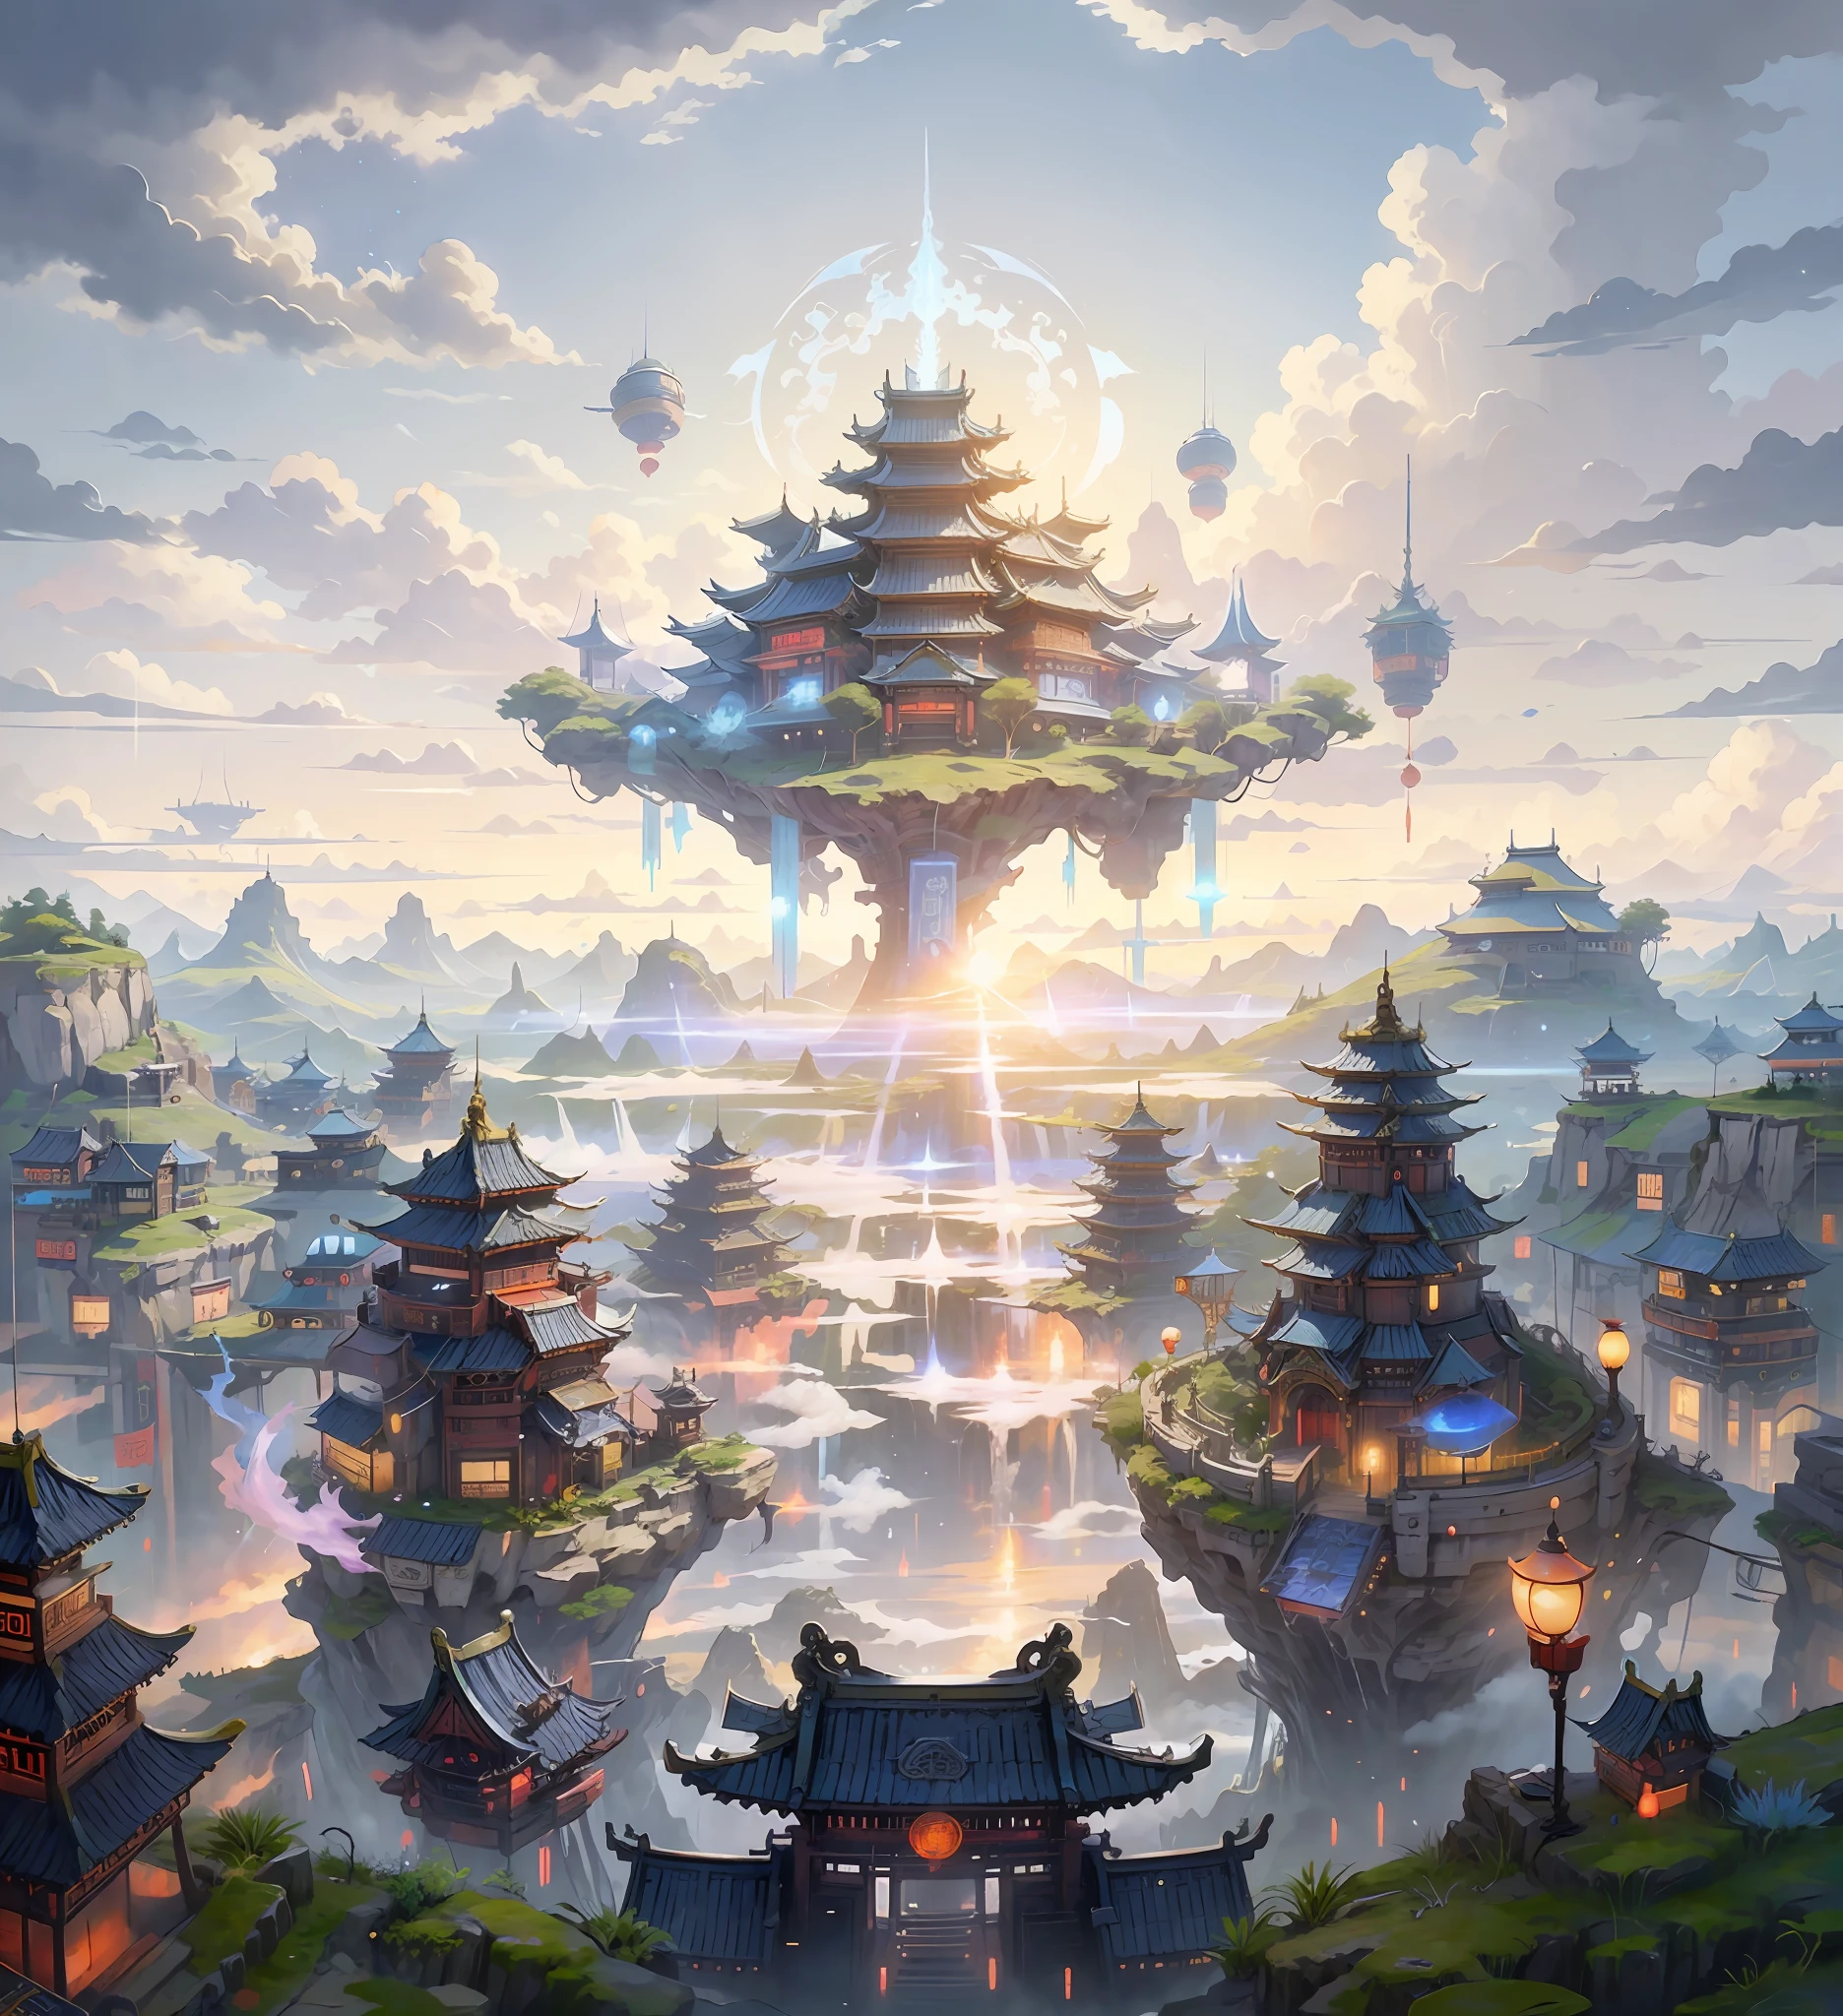 Monde immortel, île aux fées, Royaume du ciel, tons bleus et blancs, style science-fiction, Architecture chinoise ancienne